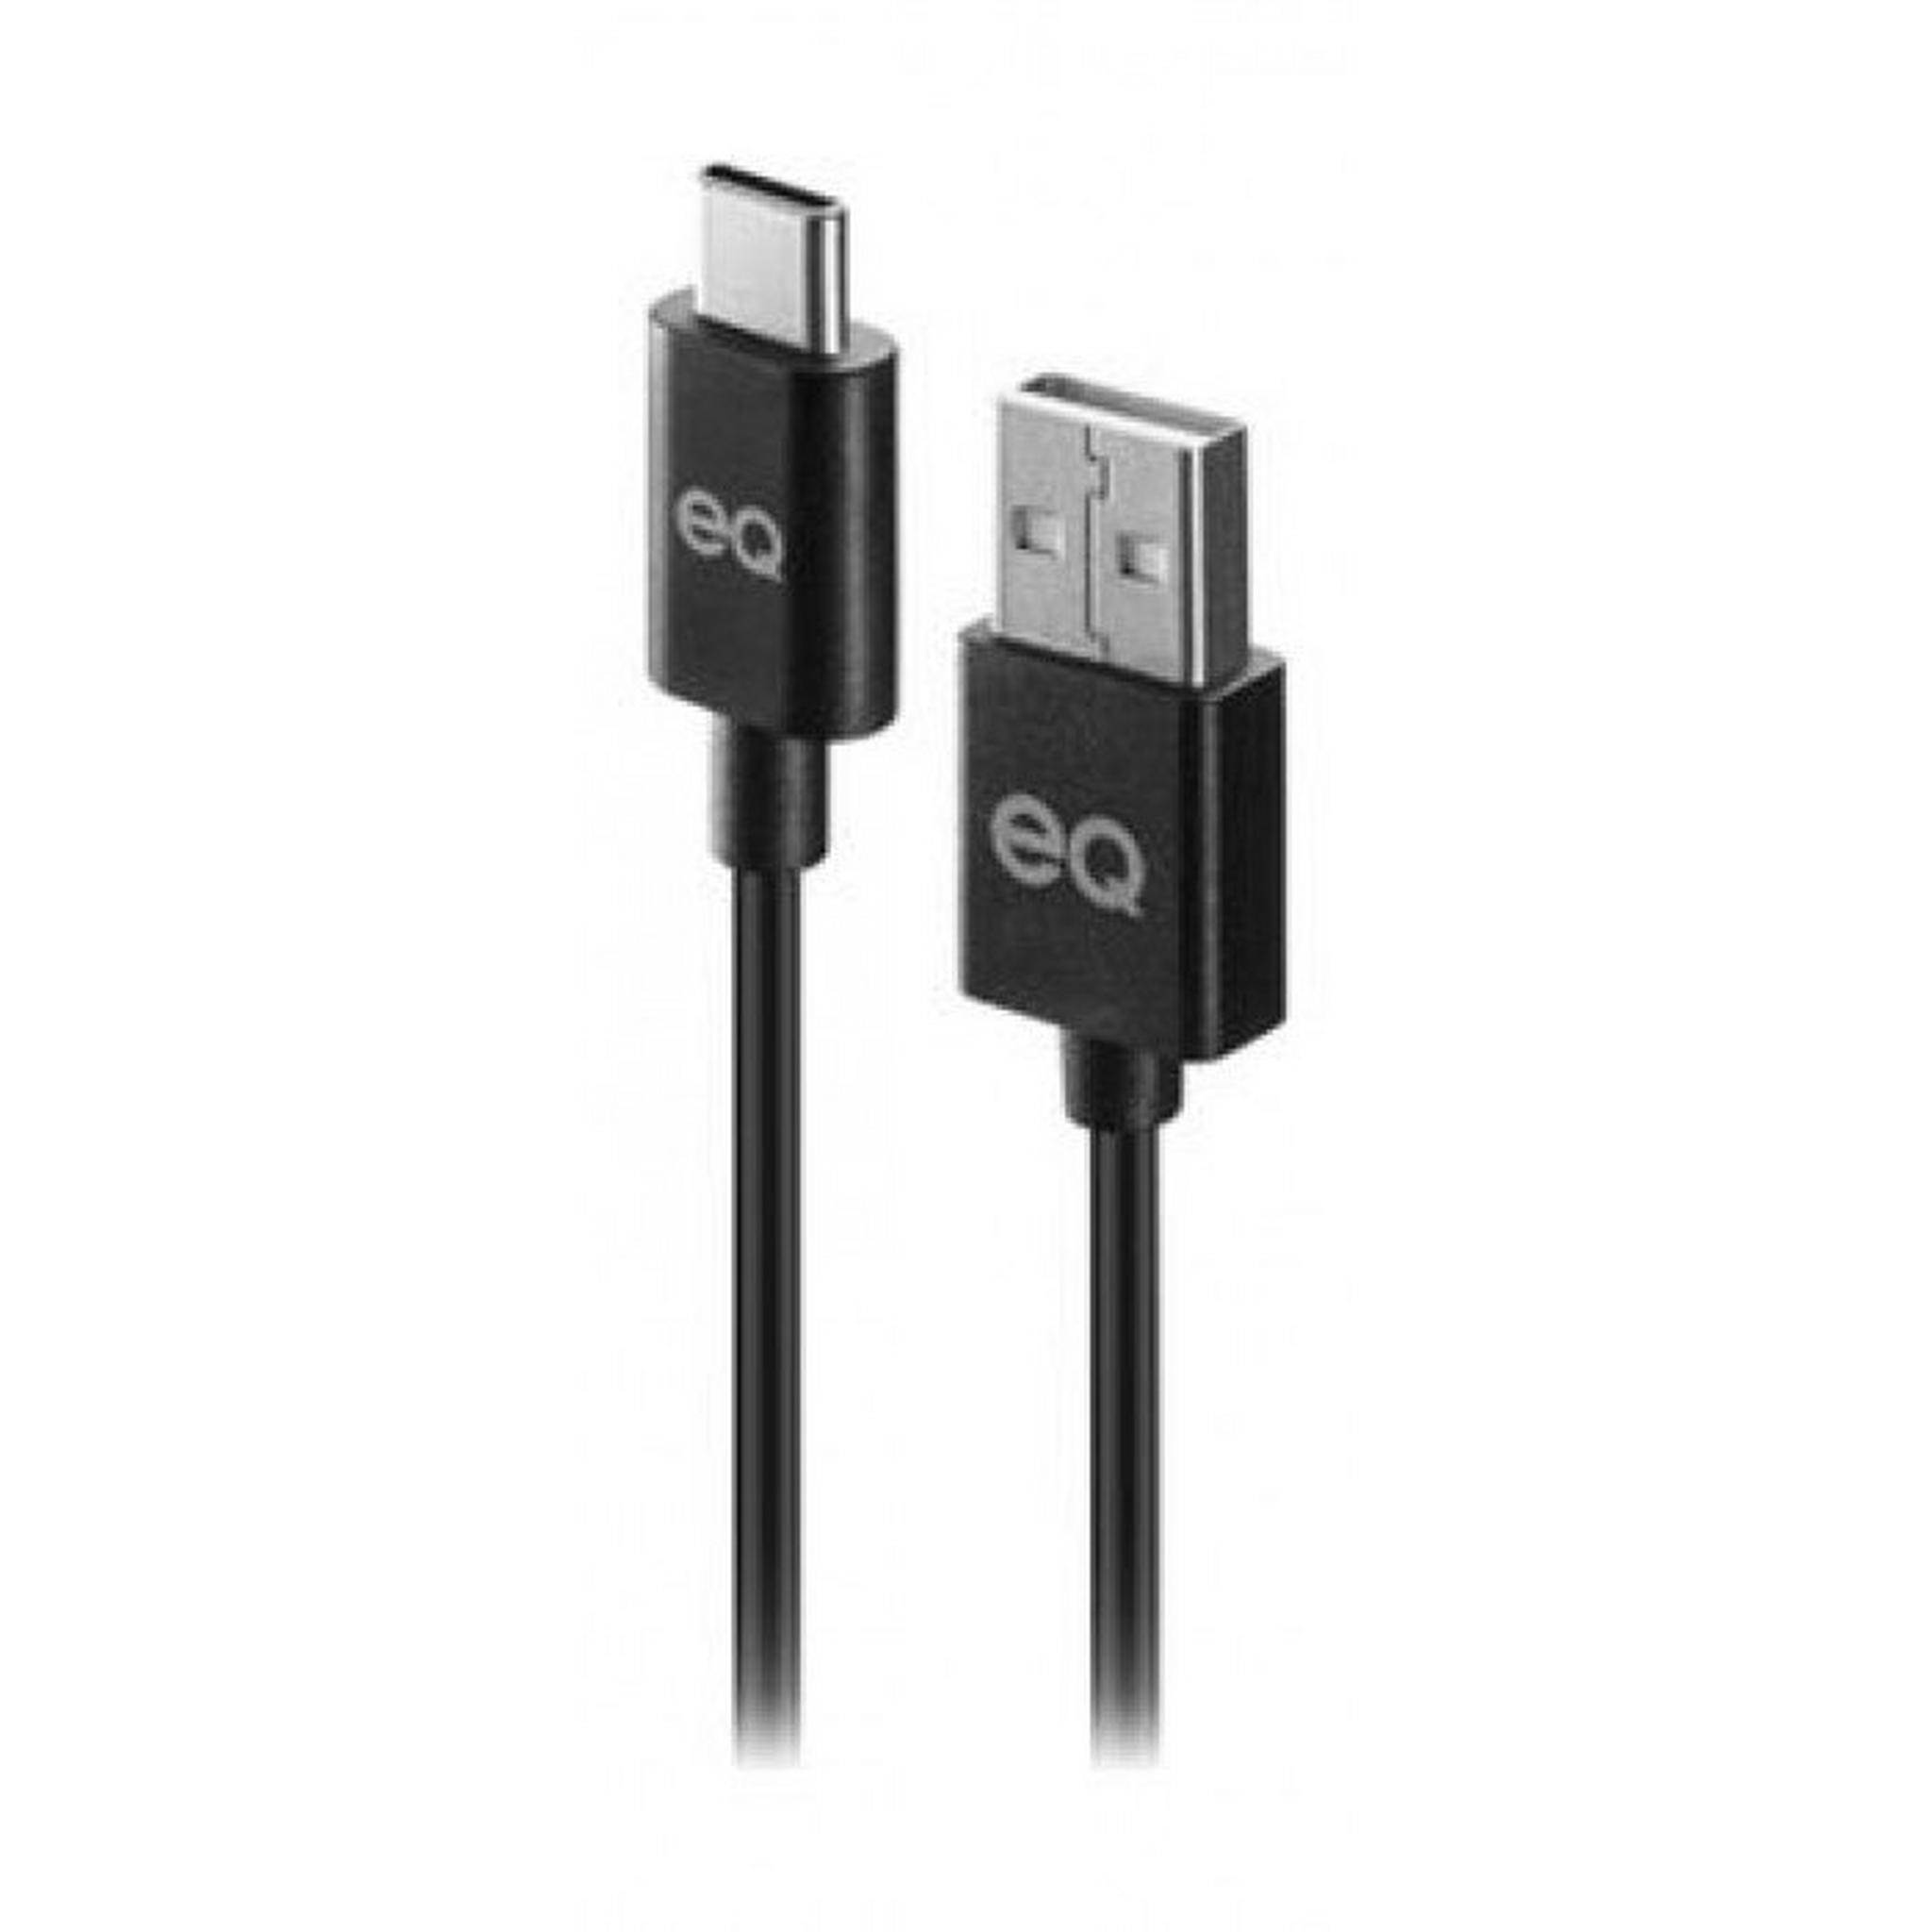 EQ USB Type-C Cable 15-CM - Black